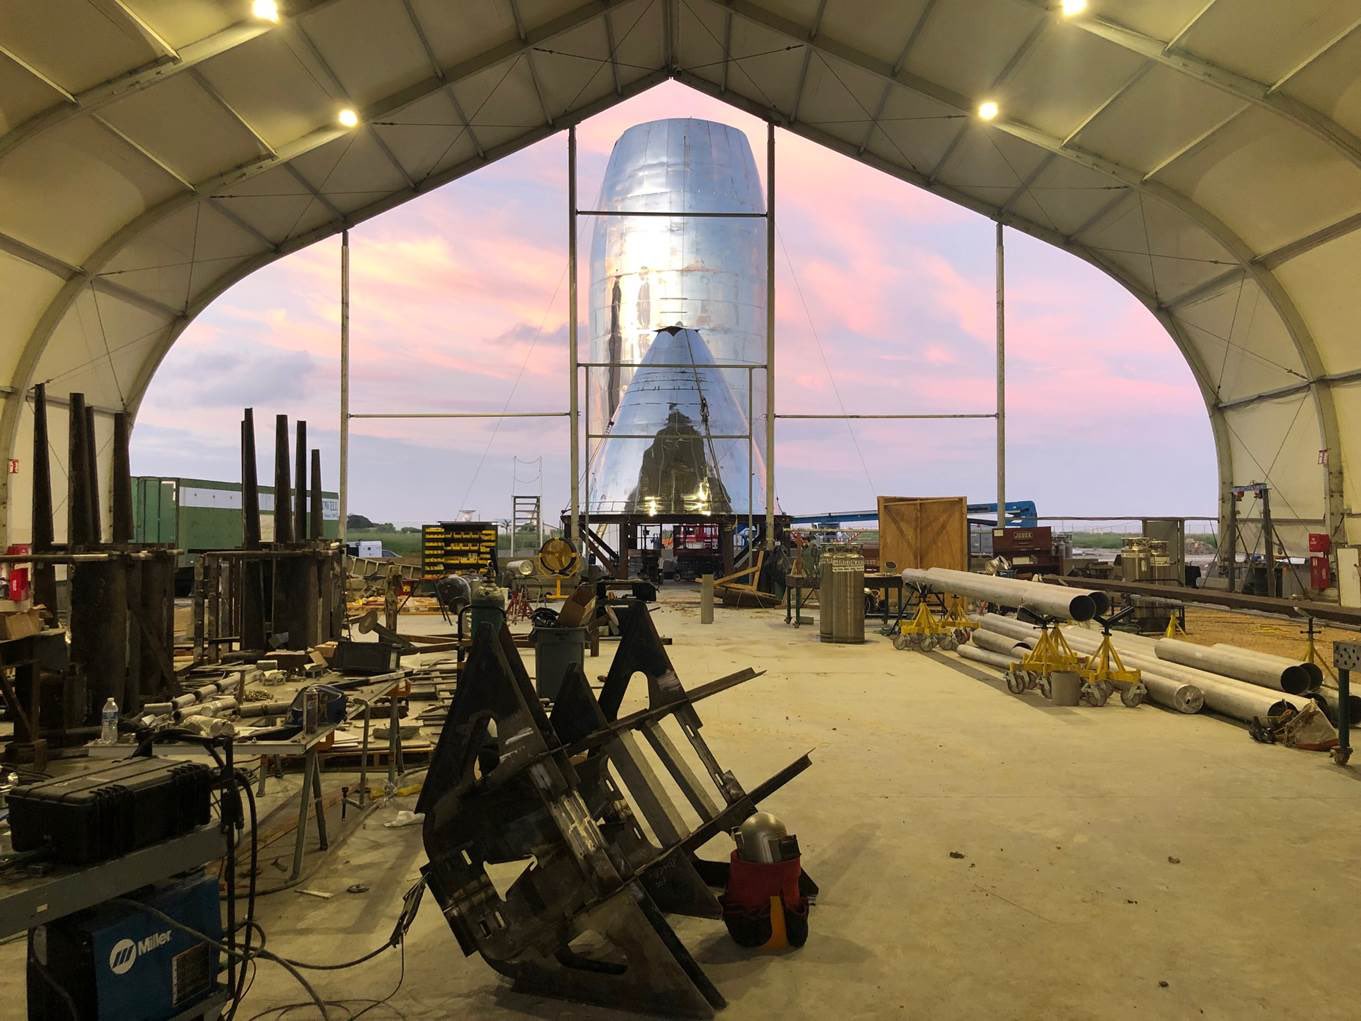 Ośrodek SpaceX w Boca Chica w Teksasie we wrześniu 2019 roku (Źródło: Elon Musk)